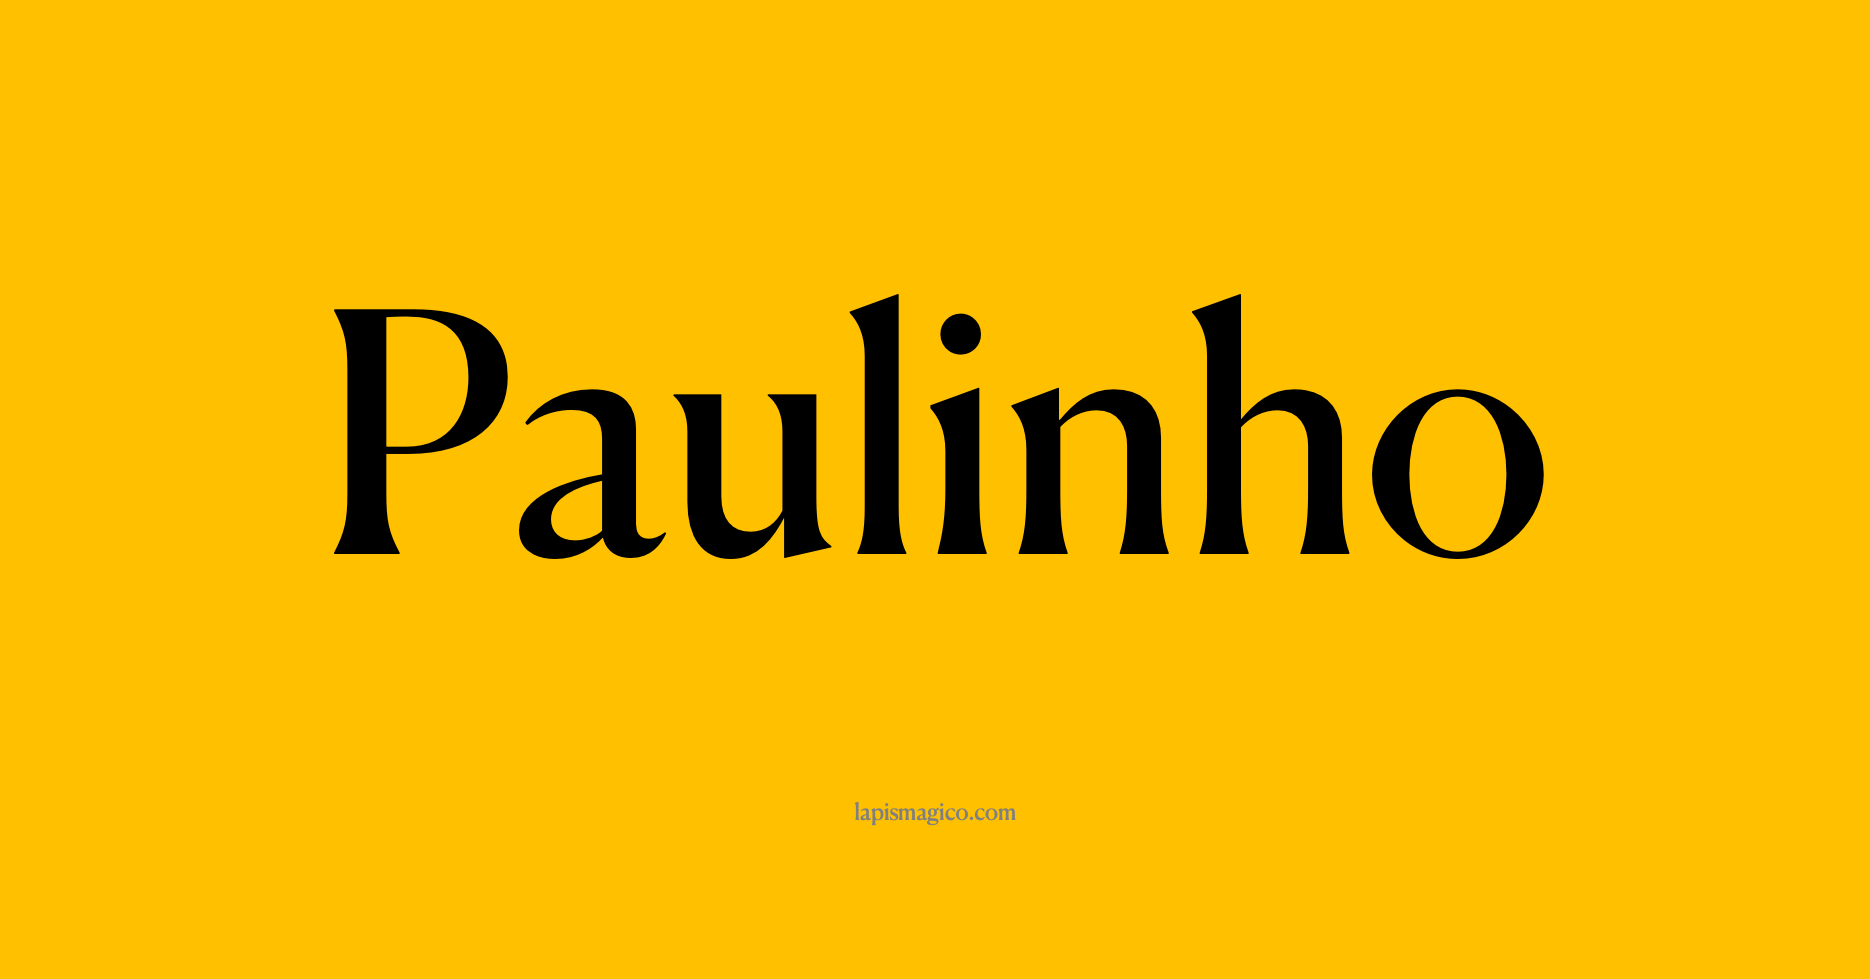 Nome Paulinho, ficha divertida com pontilhado para crianças